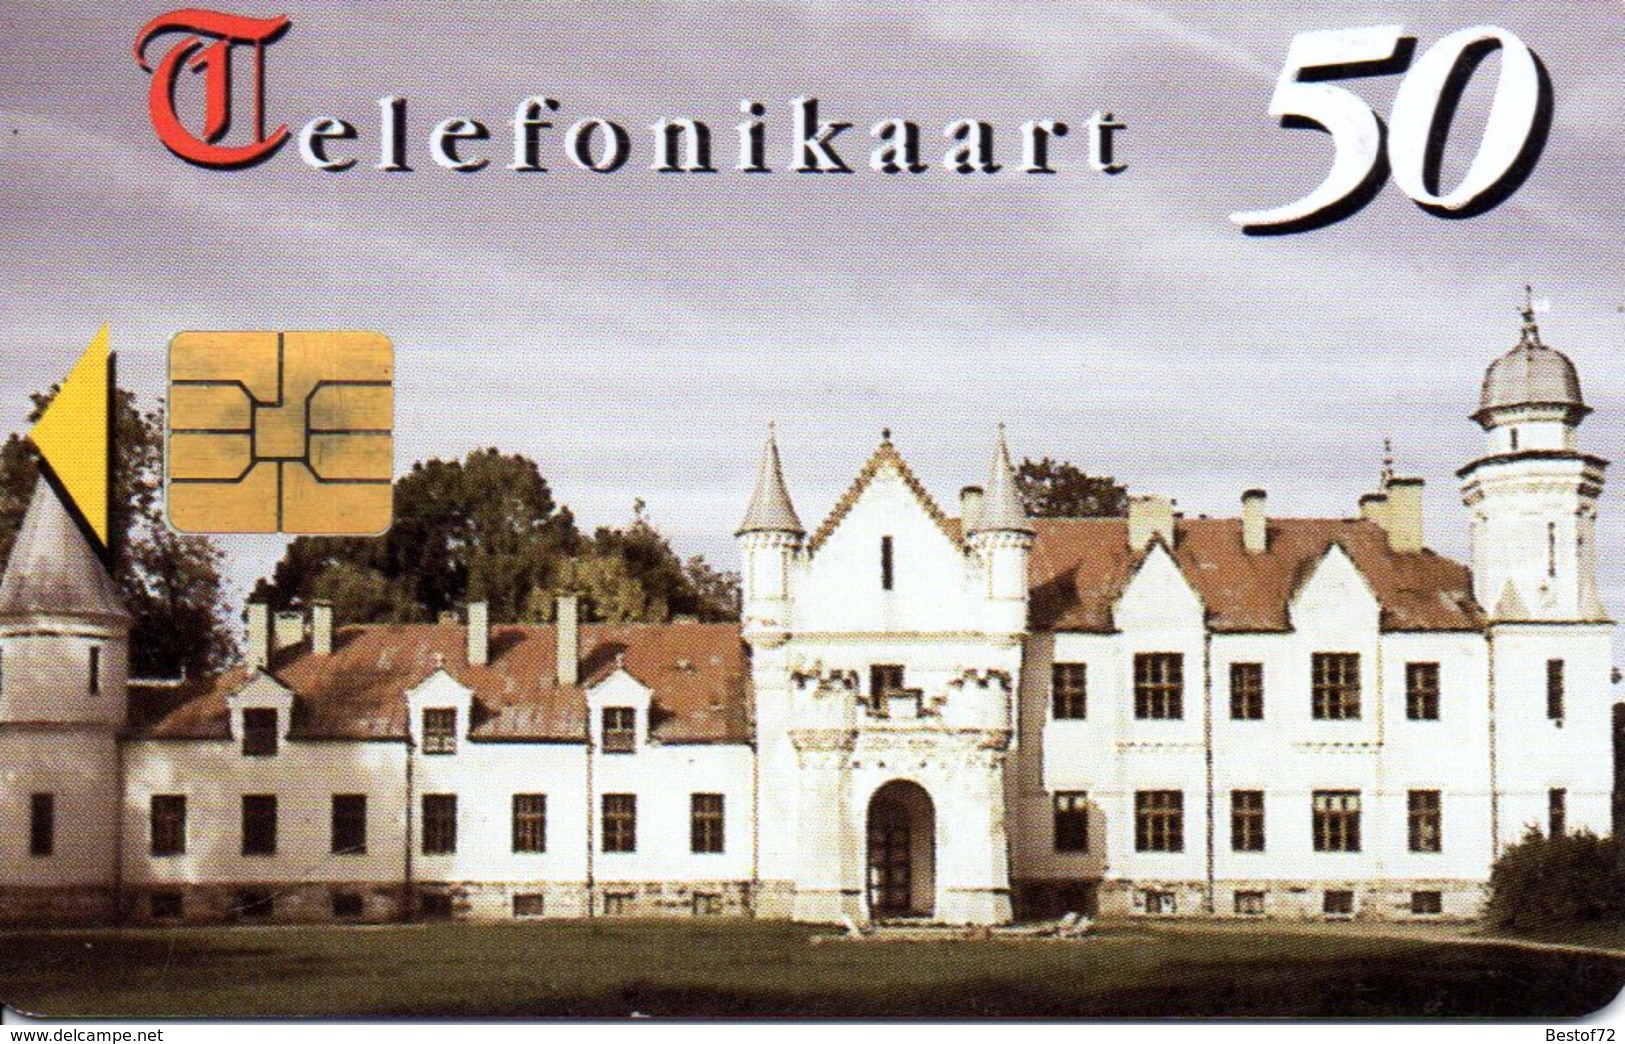 Telefonikaart 50 1997 - Estonia